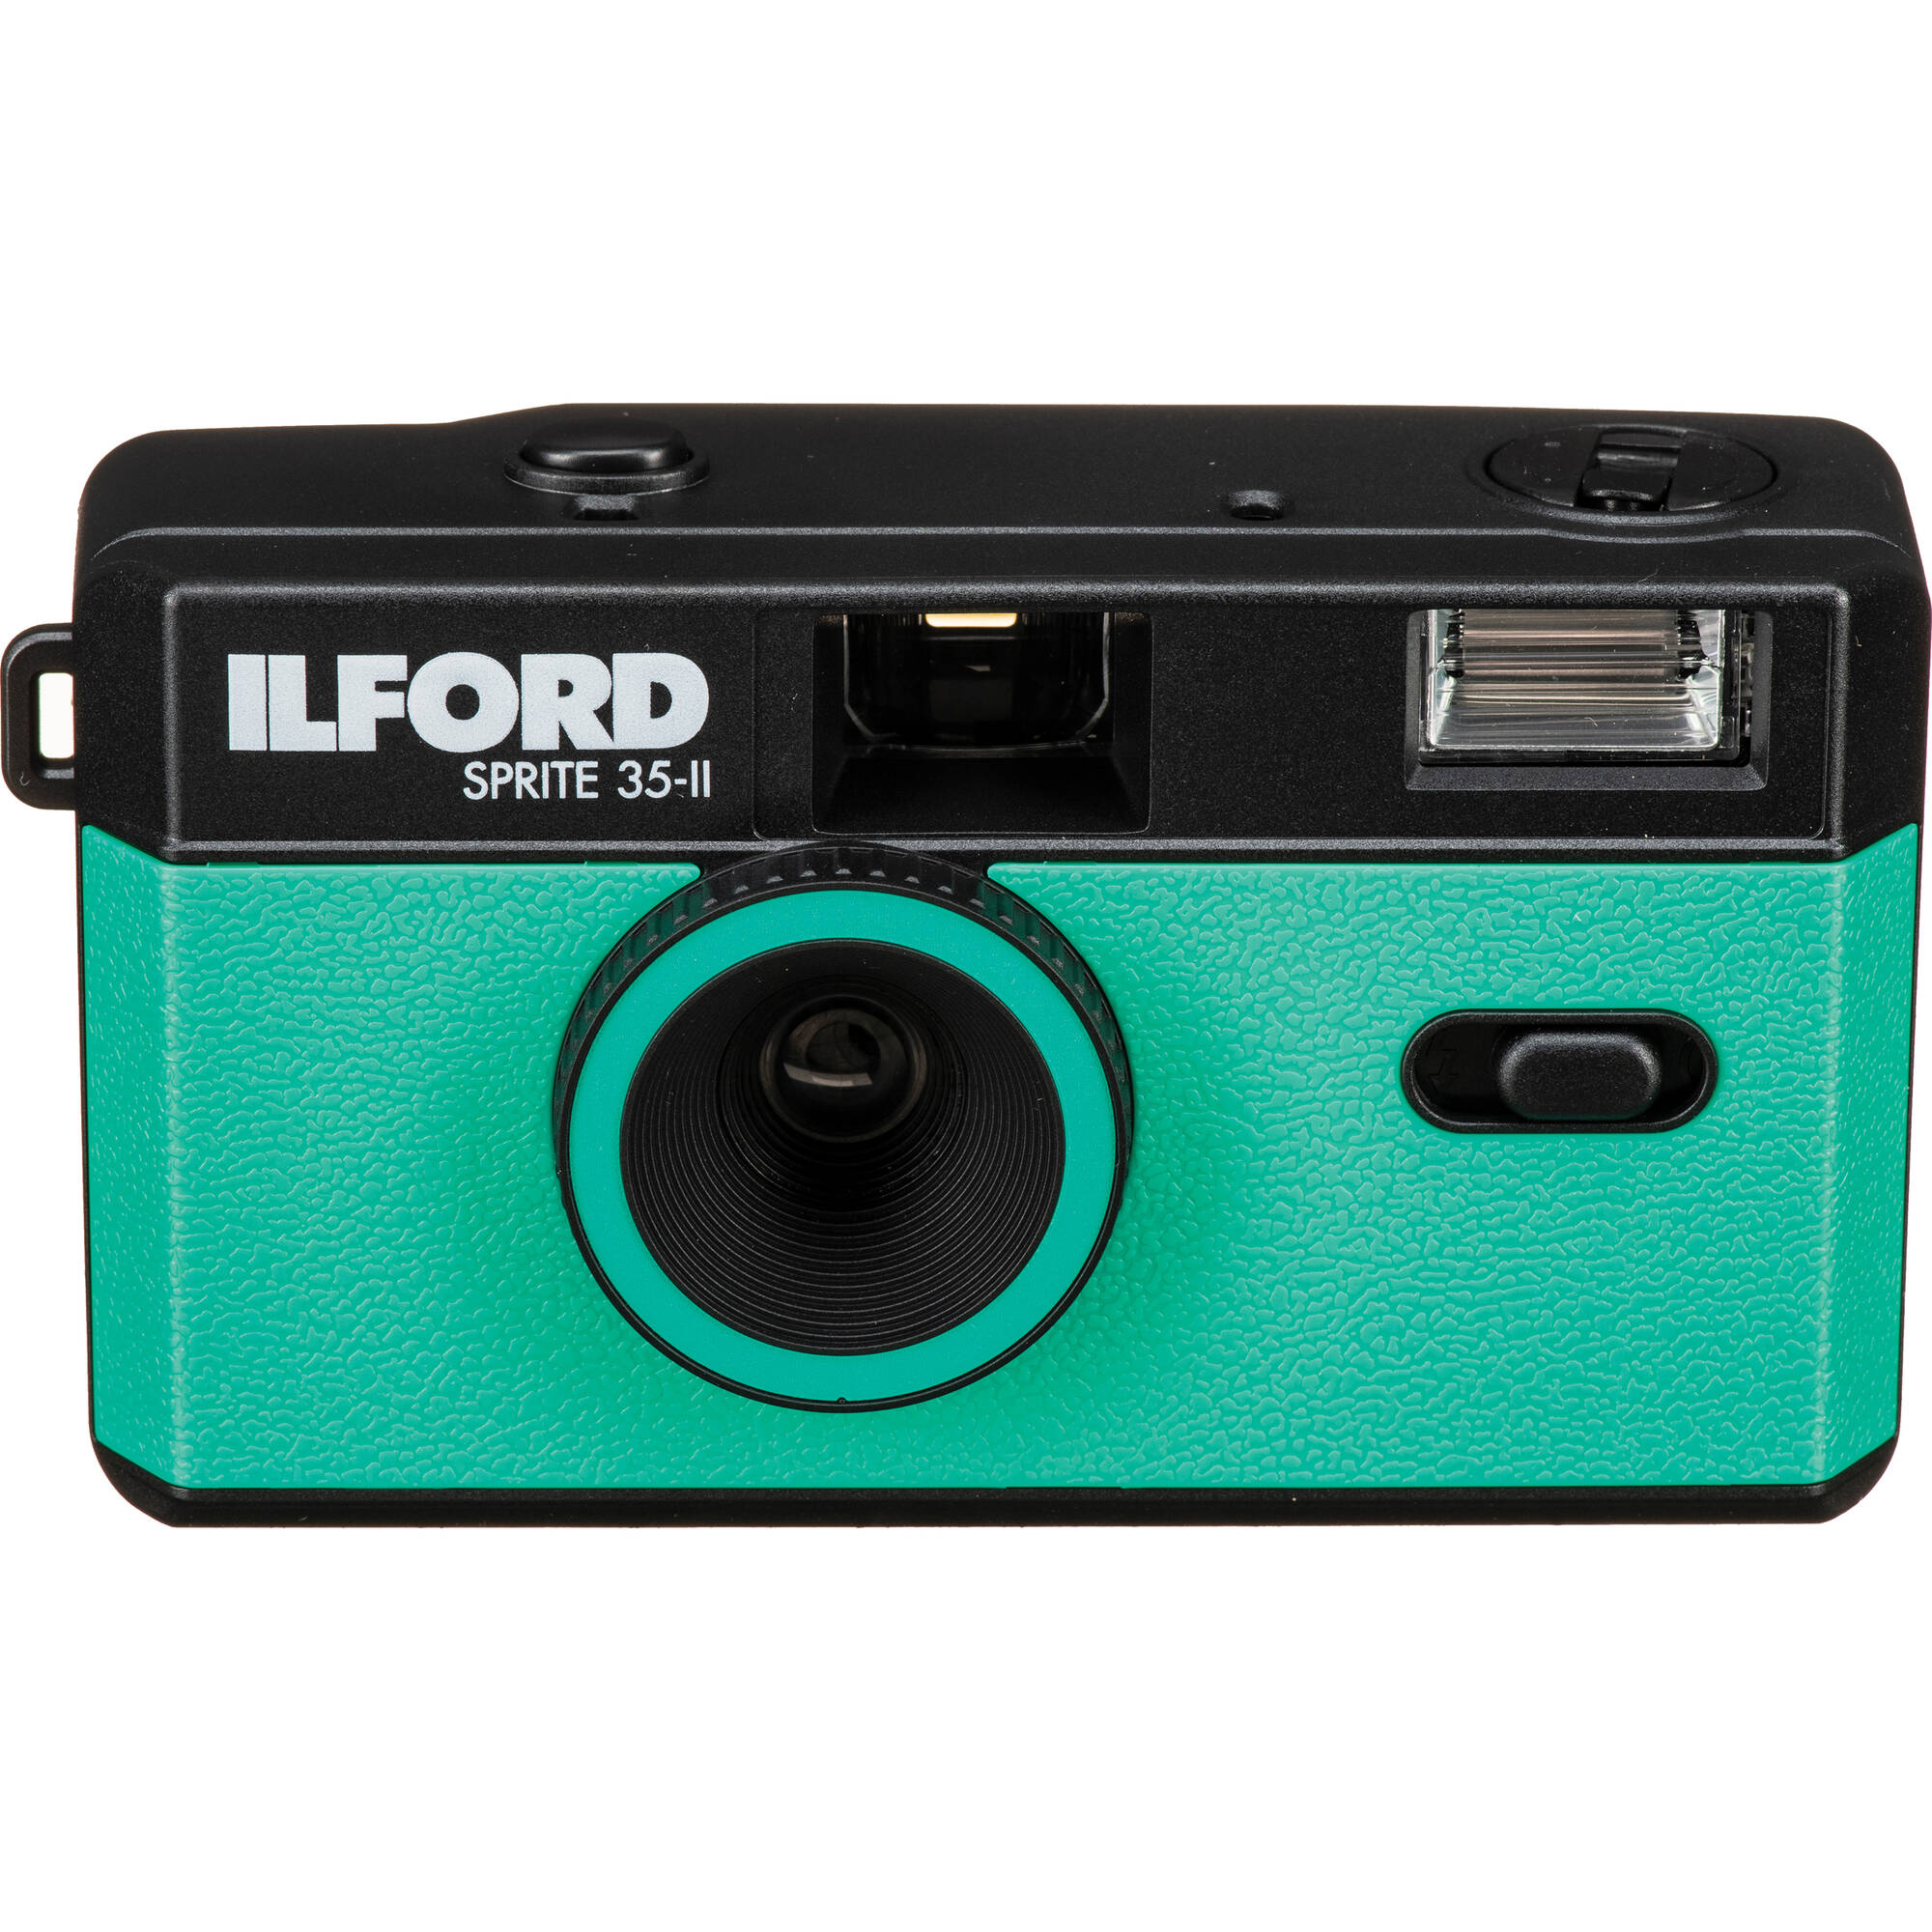 Cámara de película Ilford Sprite 35-II (negro y verde azulado)